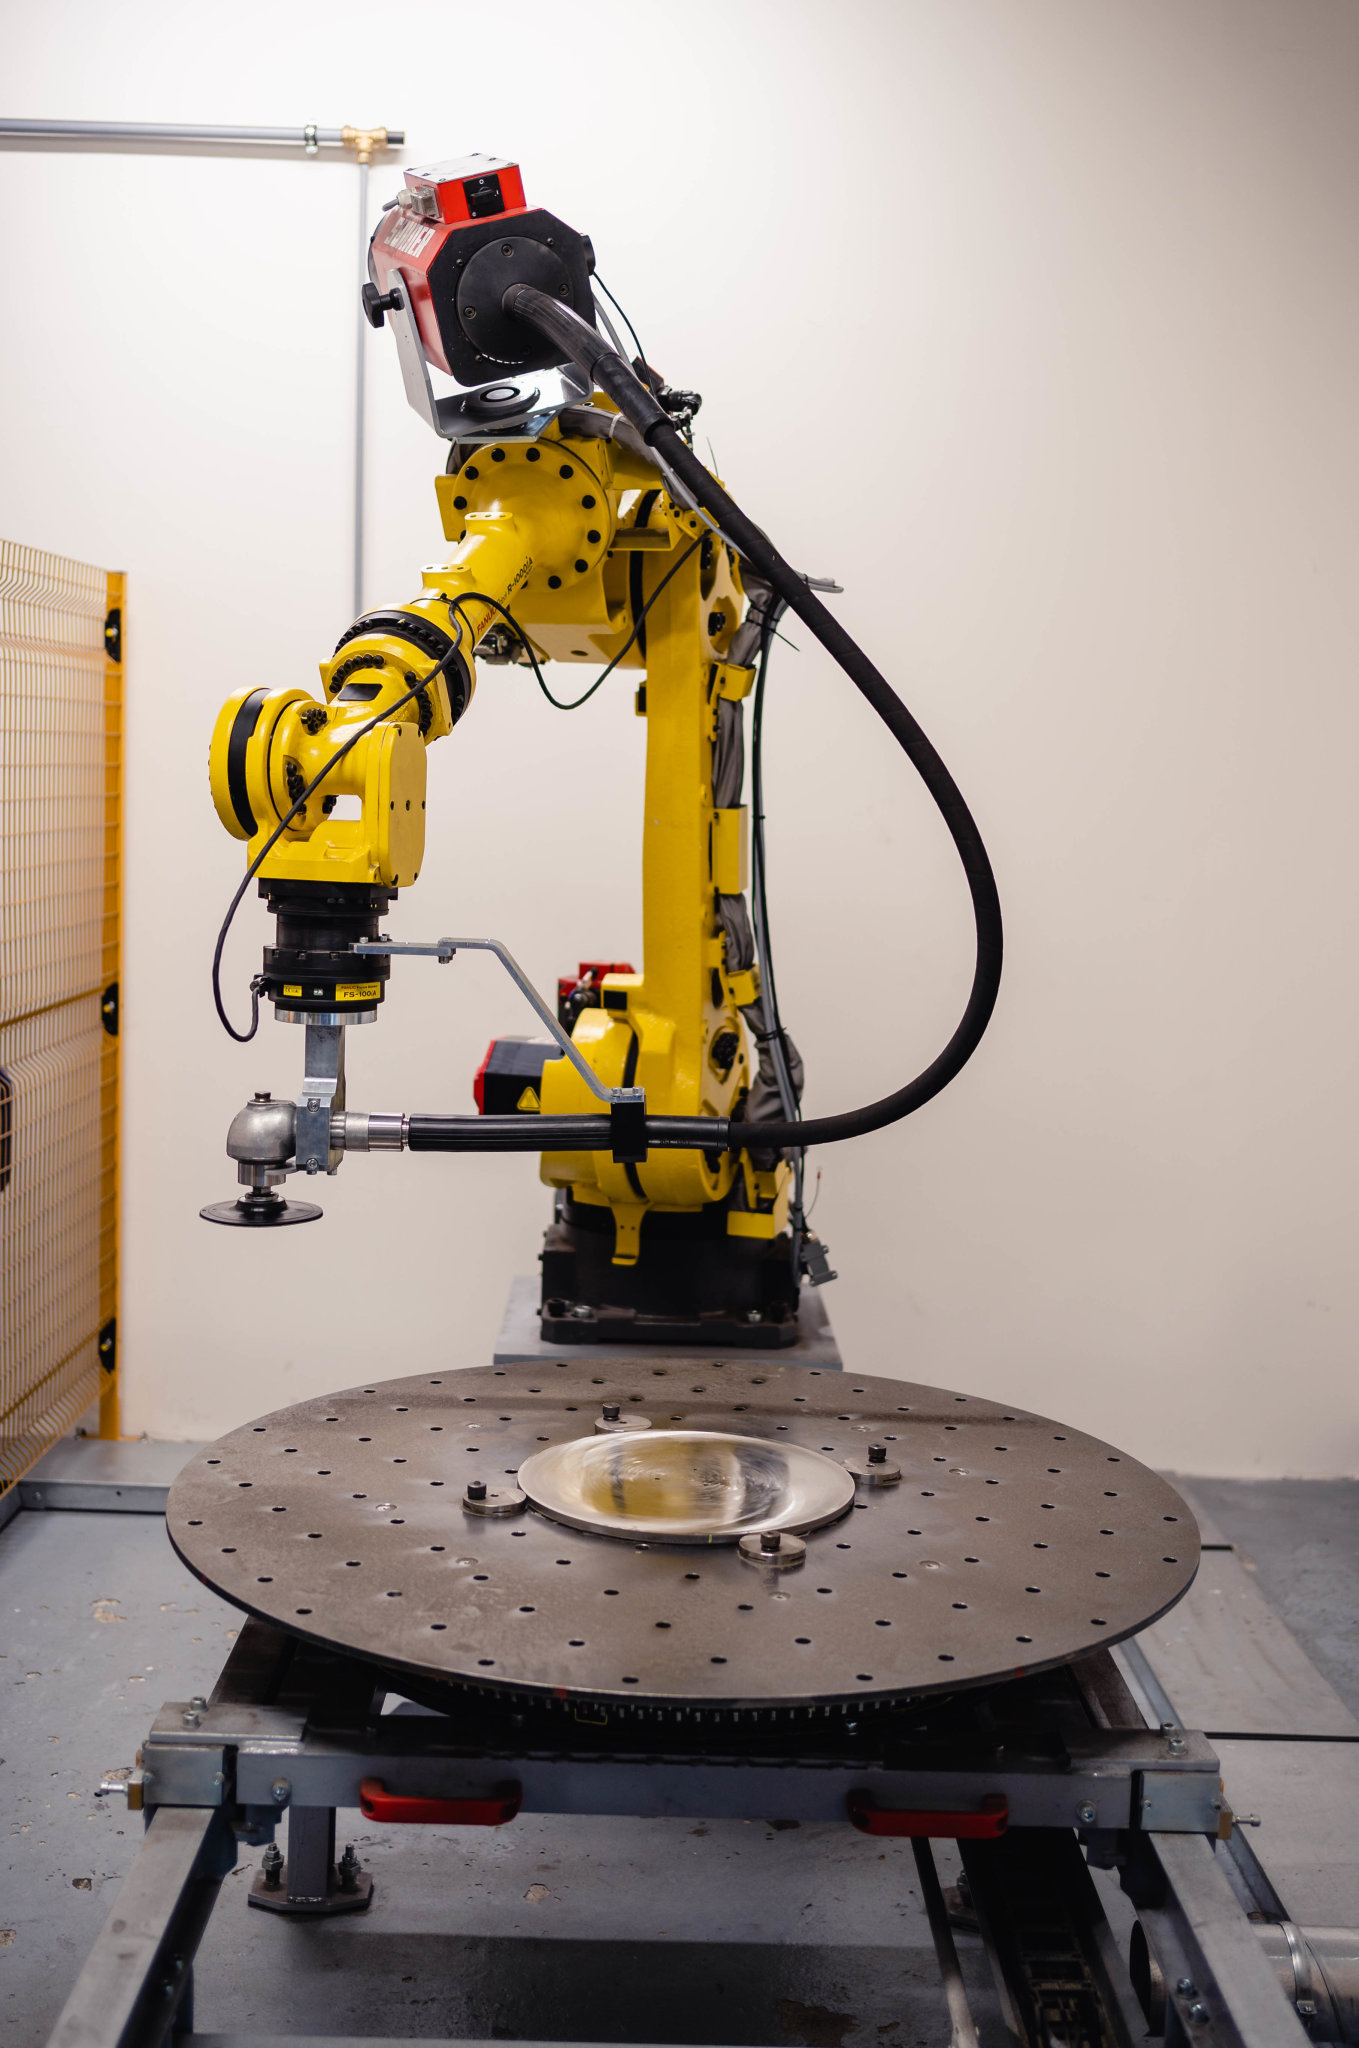 Èást fyzicky nároèných procesù broušení a leštìní ve firmì Frunìk Inox pøevzal robot, který také zaruèí opakovatelnost kvality a produktivity.